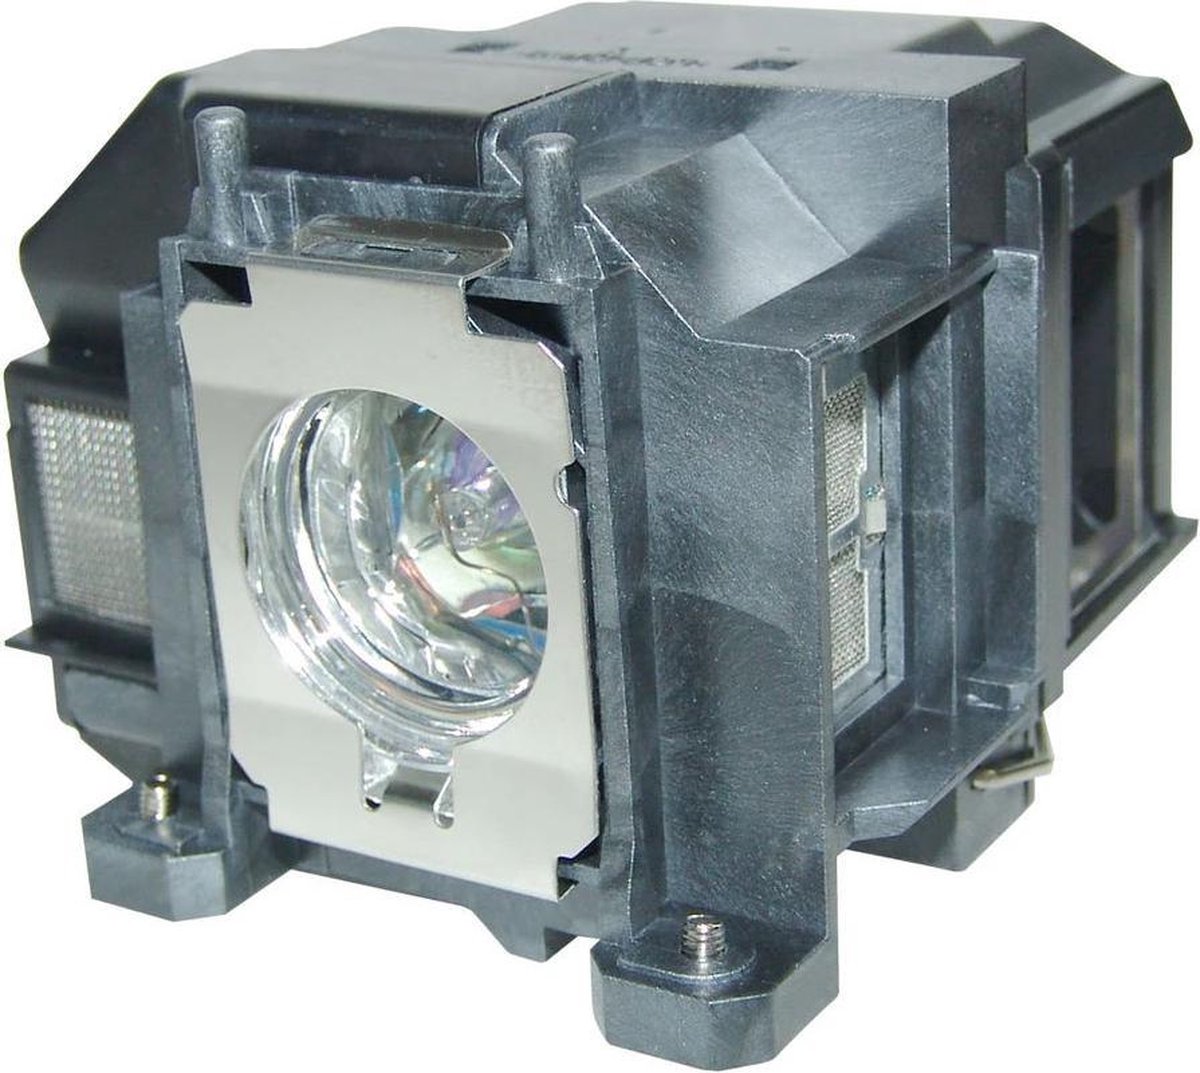 Beamerlamp geschikt voor de EPSON POWERLITE 1261W beamer, lamp code LP67 / V13H010L67. Bevat originele P-VIP lamp, prestaties gelijk aan origineel.